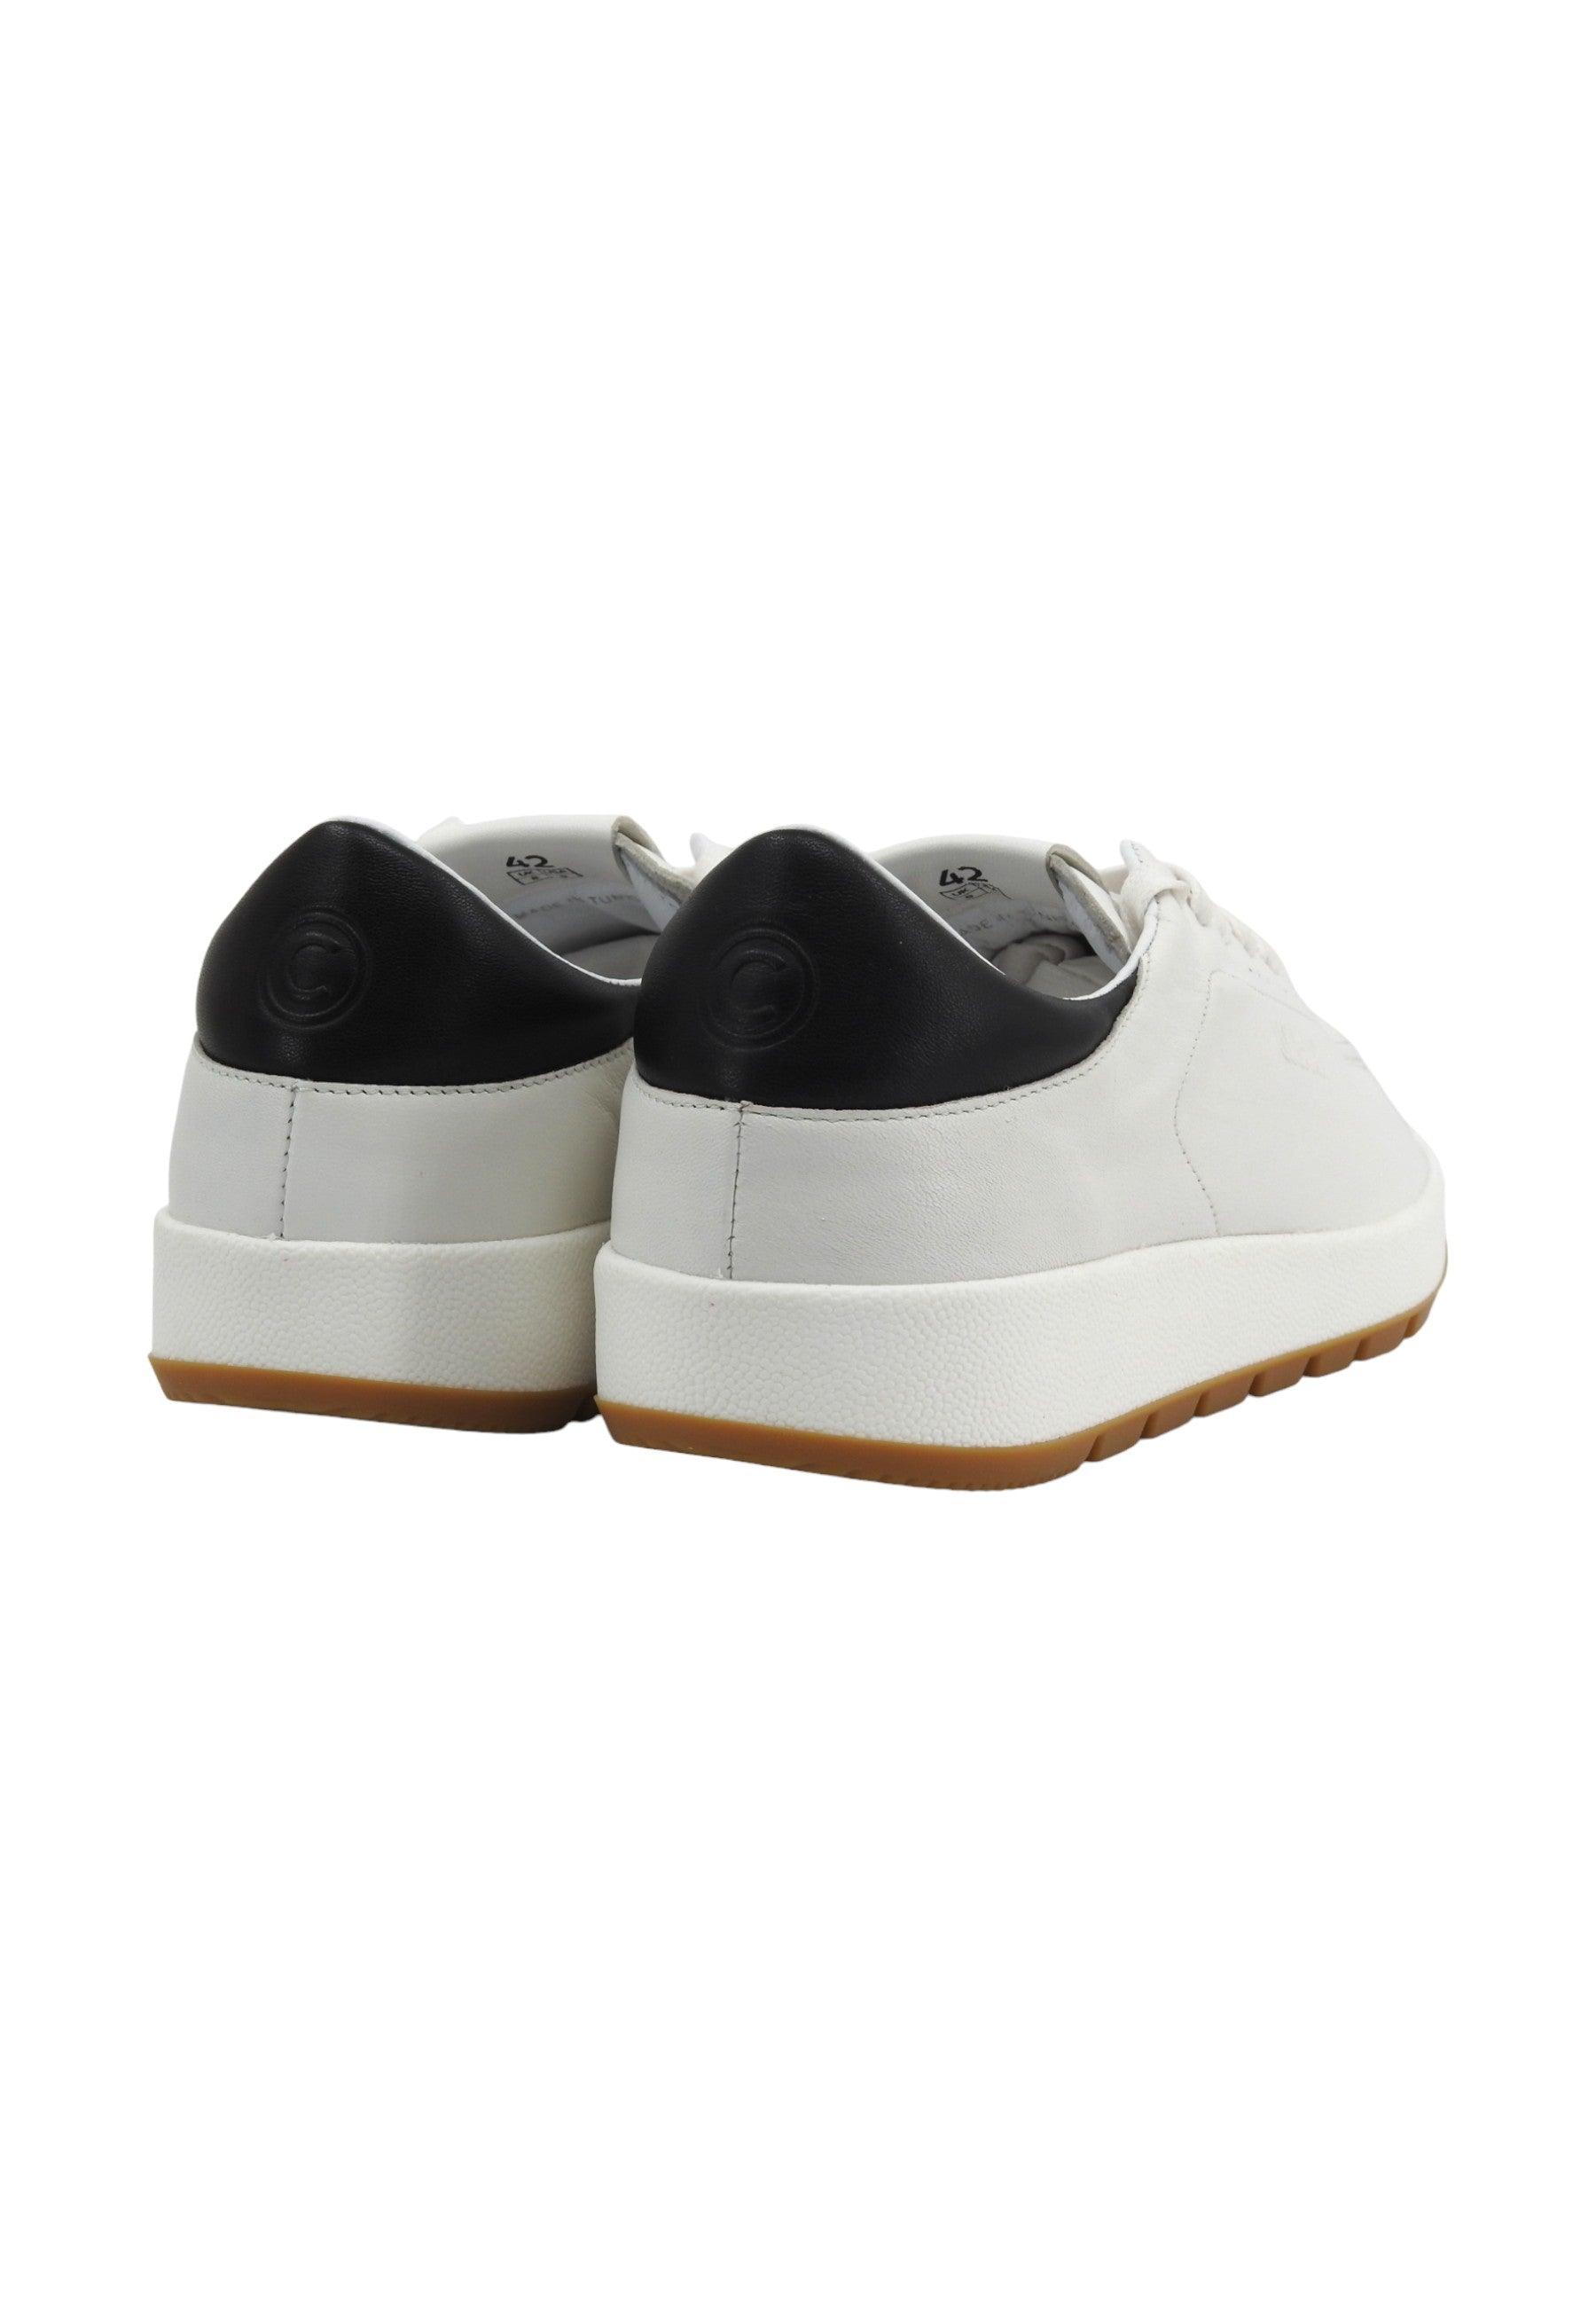 COLMAR Sneaker Uomo White Black FEYDER PREMIUM - Sandrini Calzature e Abbigliamento